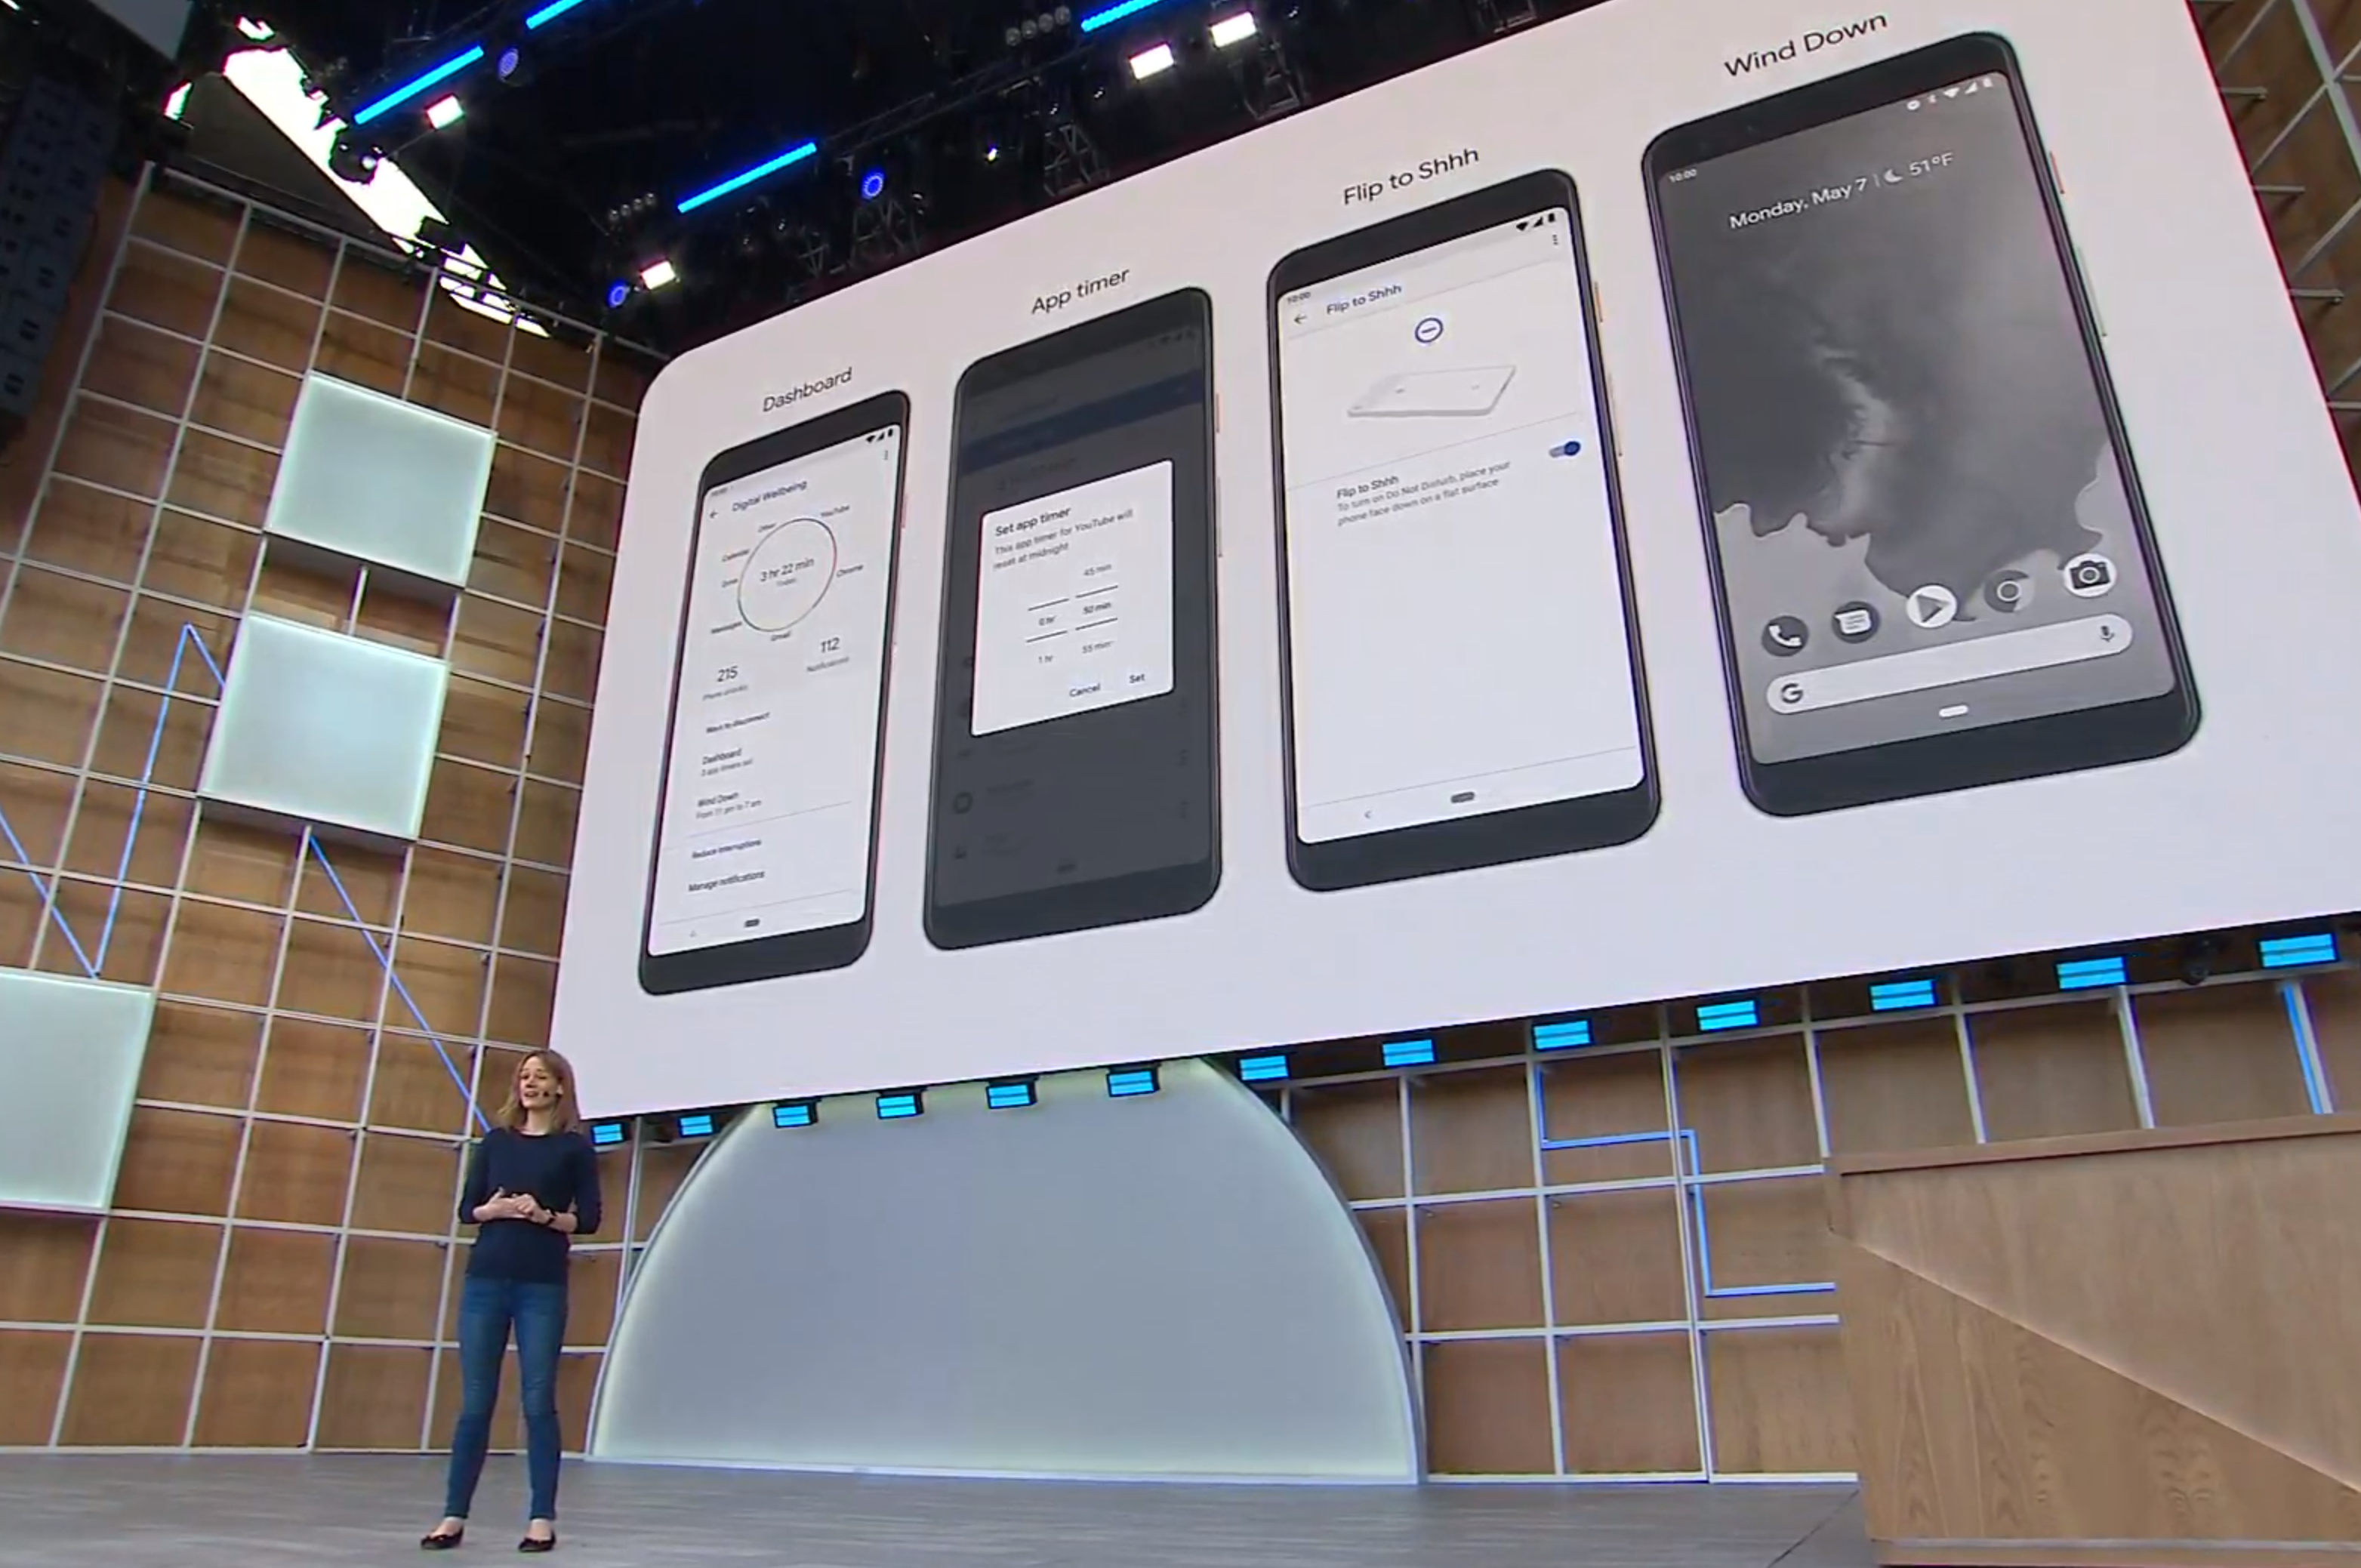 Nylig oppdaterte Google Android-planene sine under IO-konferansen. Blant disse planene annonserte de at sikkerhetsoppdateringer skulle kom me gjennom Google Play. Det er mulig å se for seg at Google Play også skilles fra Android-operativsystemet og blir en egen nedlasting.